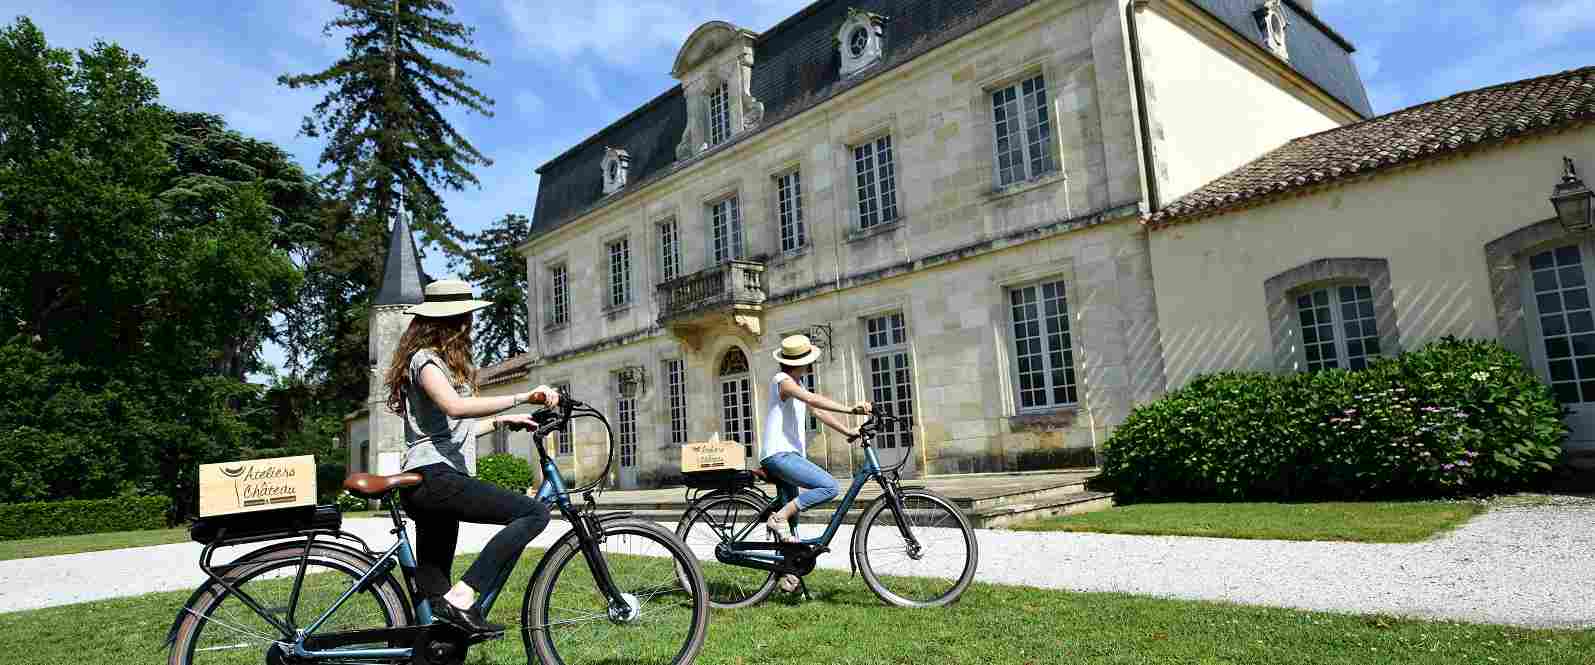 Visiter les Châteaux à vélo électrique !